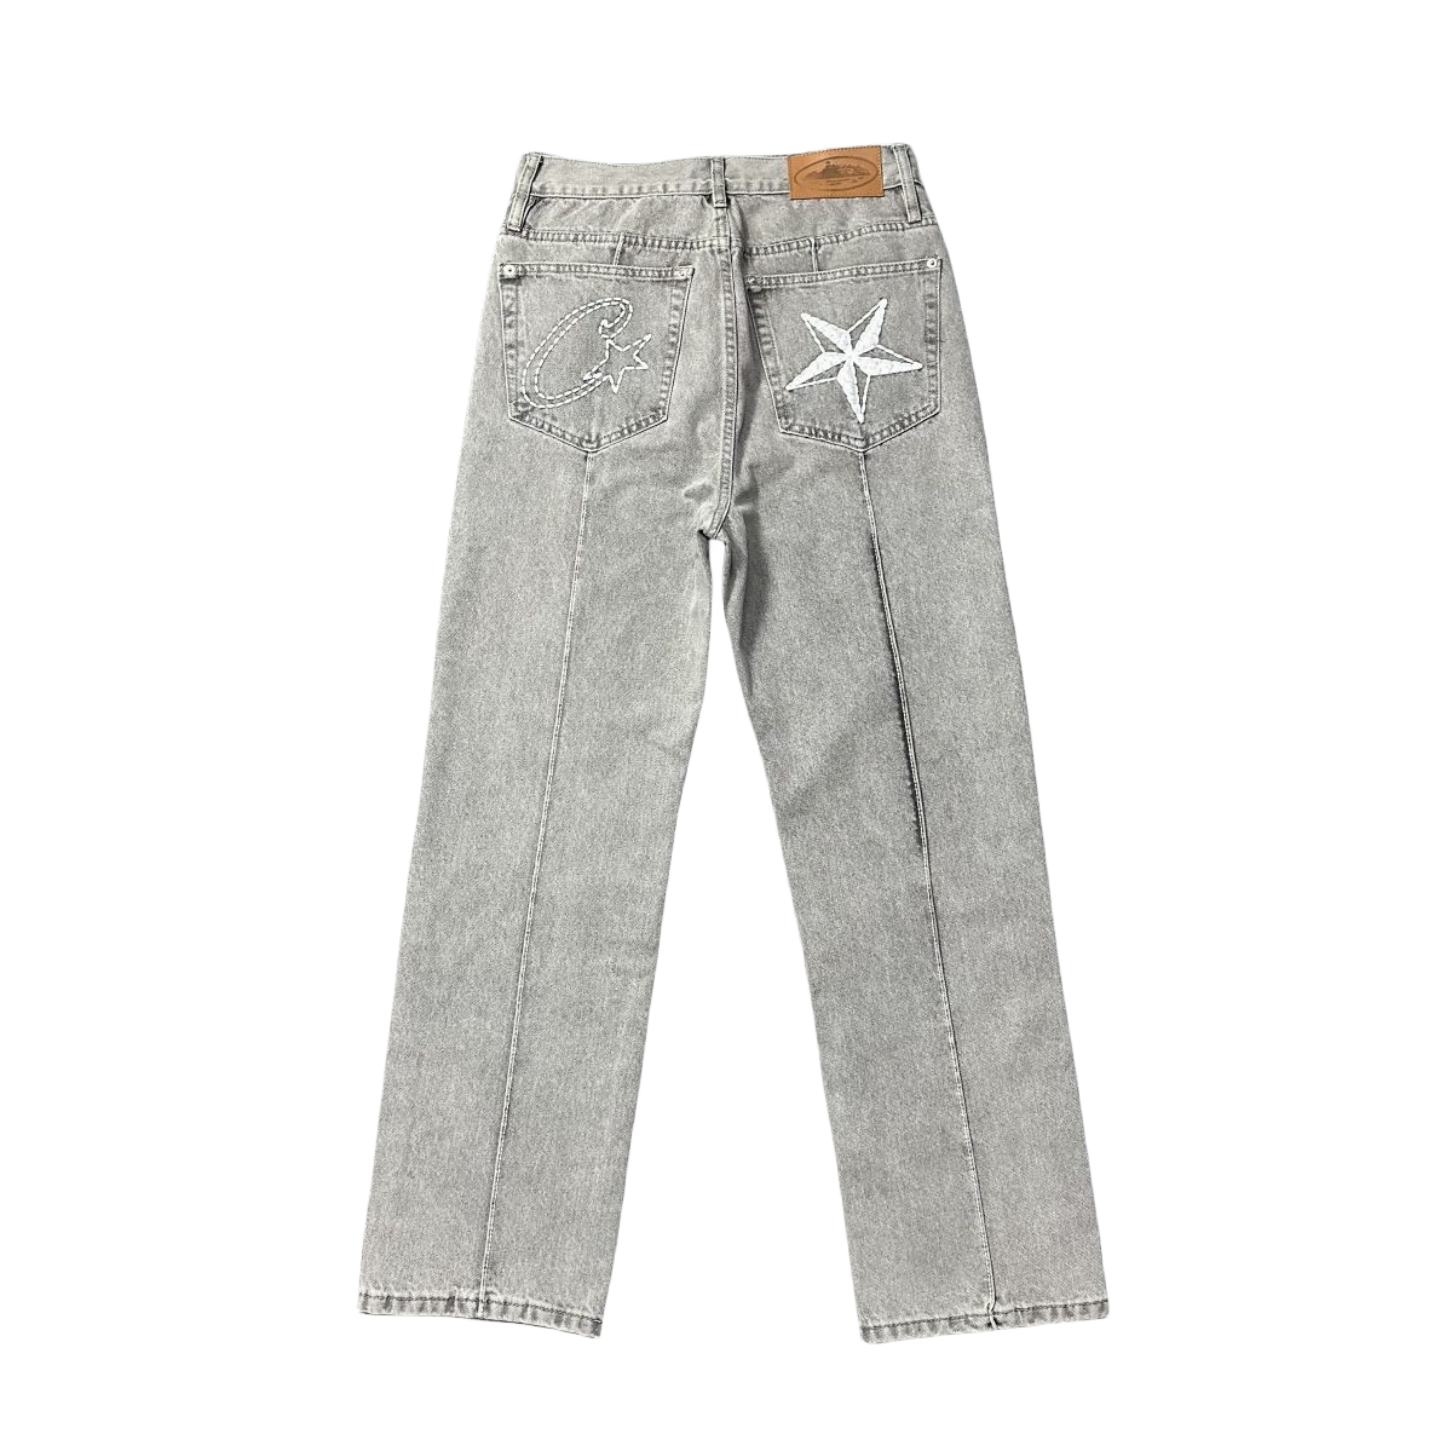 Pantalon unisexe Corteiz C-Star Denim Jeans pour hommes et femmes - BLEU